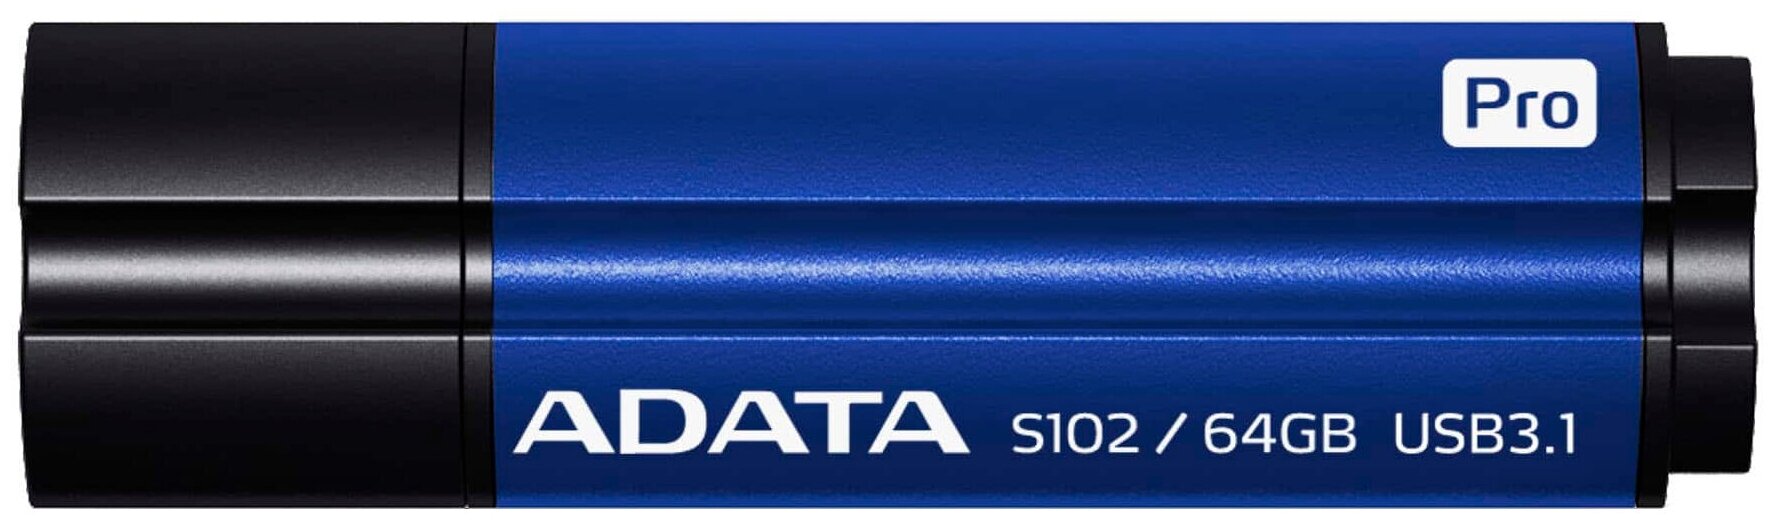 USB 3.1 Flash Drive 64GB ADATA Superior S102 Pro, синий алюминий (AS102P-64G-RBL)